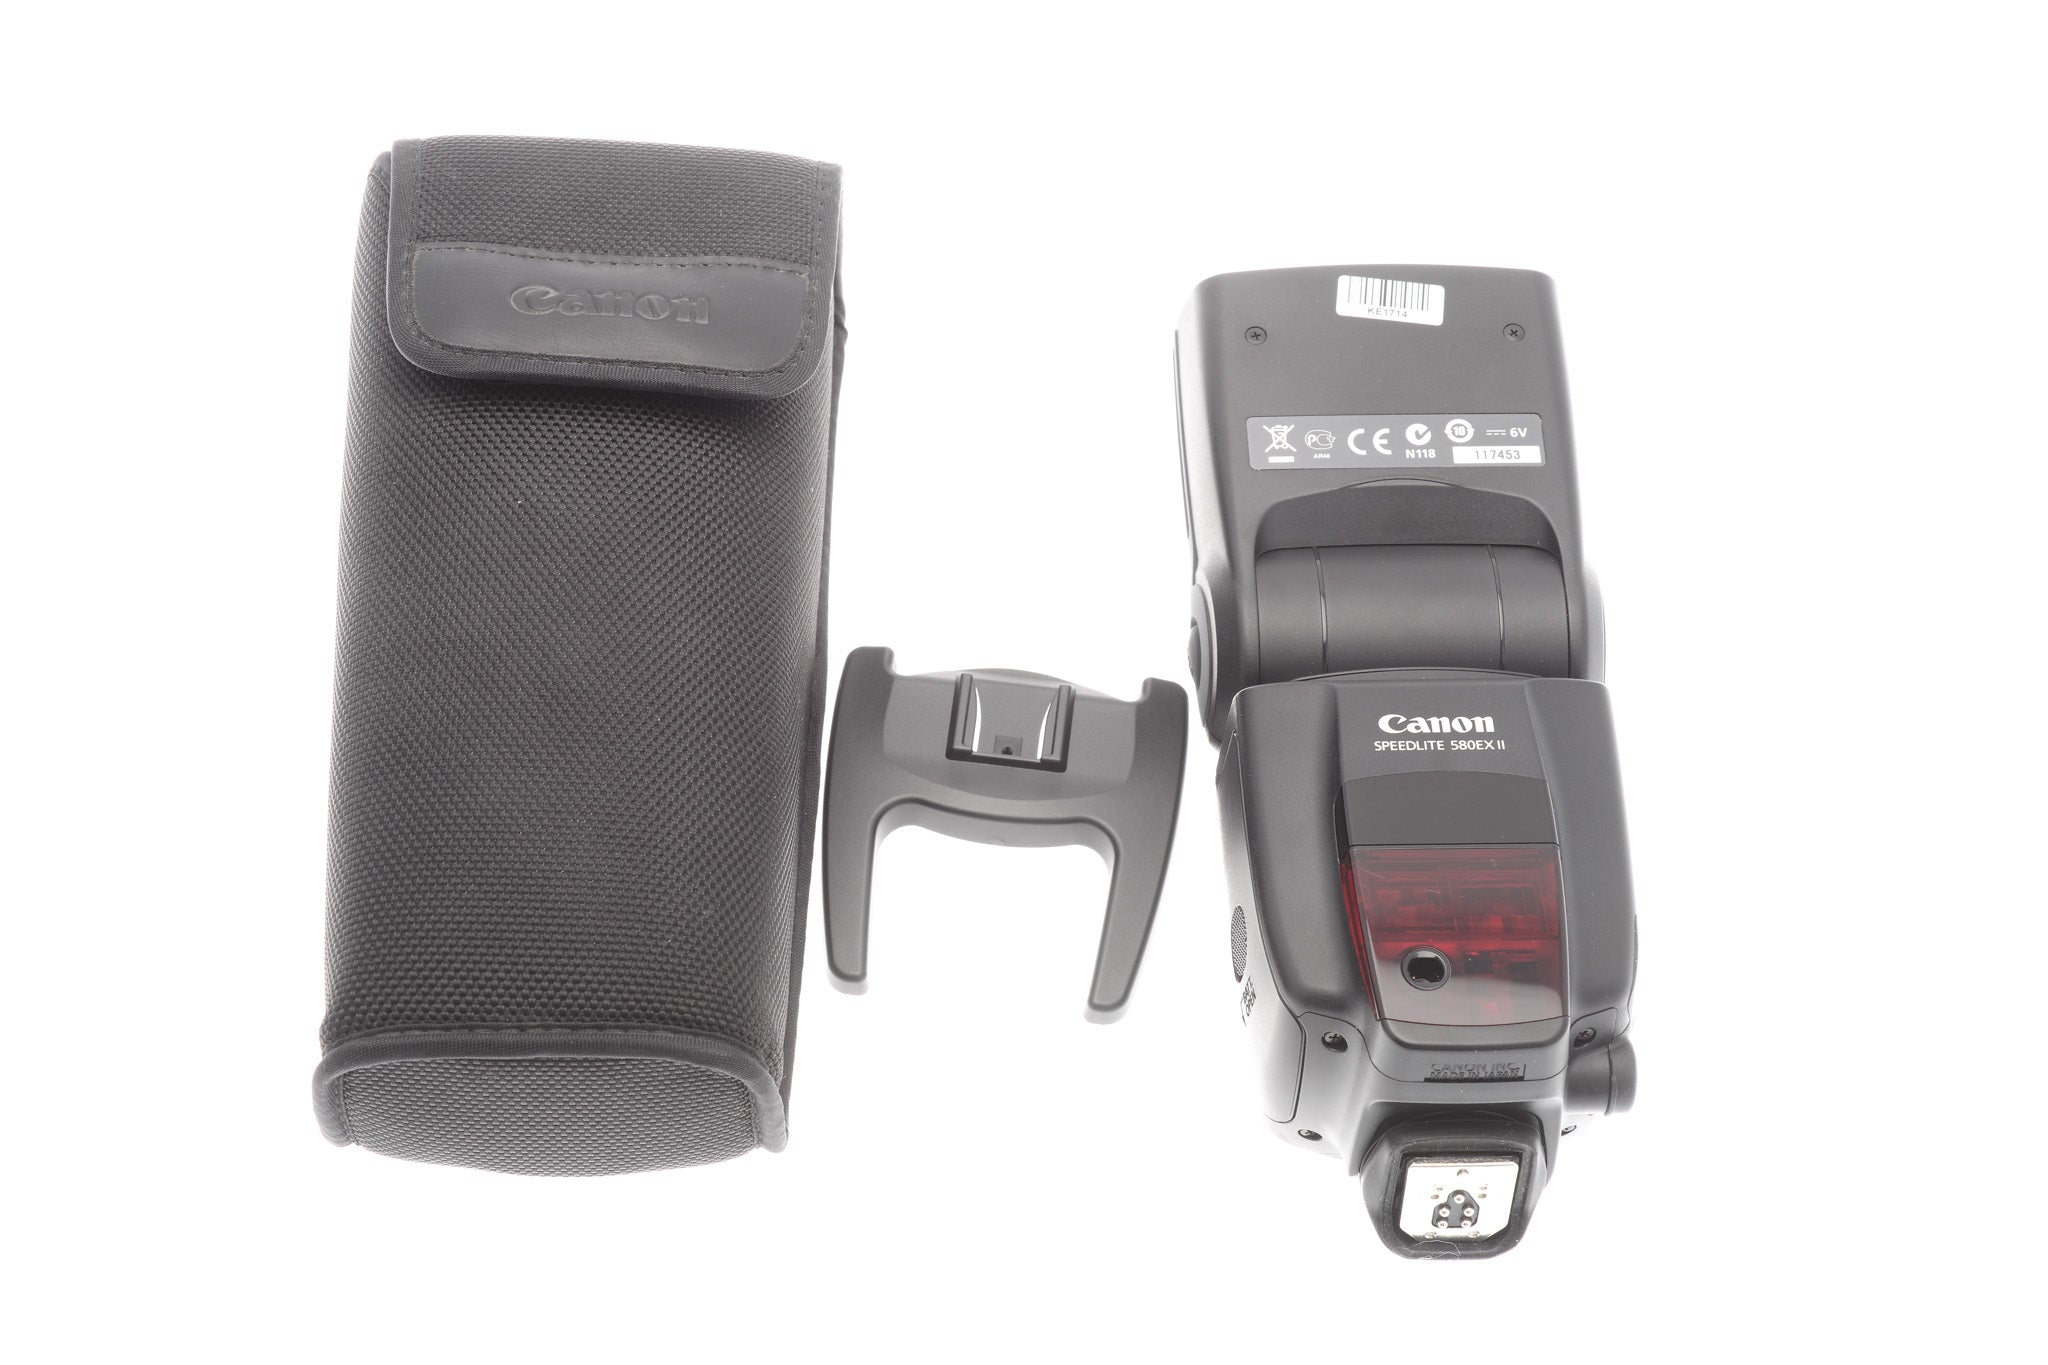 Canon SpeedLite 580EX II au meilleur prix - Comparez les offres de Flash  sur leDénicheur